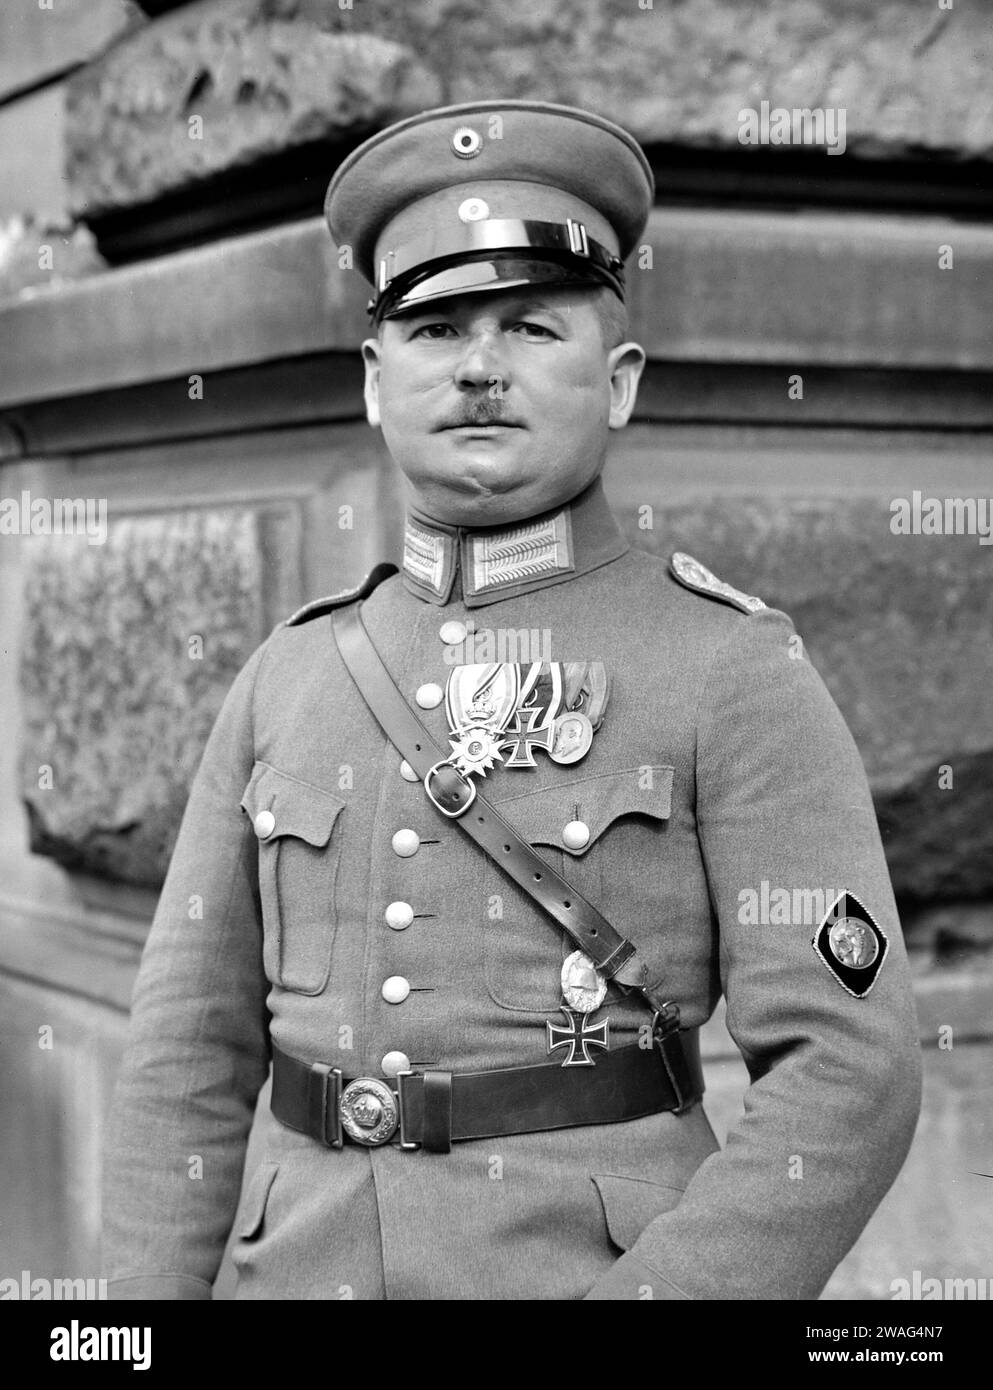 Ernst Rohm. Ritratto dell'ufficiale nazista tedesco, Ernst Julius Günther Röhm (1887-1934) come Hauptmann (capitano) nel 1924. Fu amico intimo e primo alleato di Adolf Hitler e fu il co-fondatore e leader della Sturmabteilung (SA), l'ala paramilitare originale del partito nazista, che giocò un ruolo significativo nell'ascesa al potere di Adolf Hitler. Ha servito come capo delle SA dal 1931 fino al suo omicidio nel 1934 durante la notte dei lunghi coltelli. Foto Stock